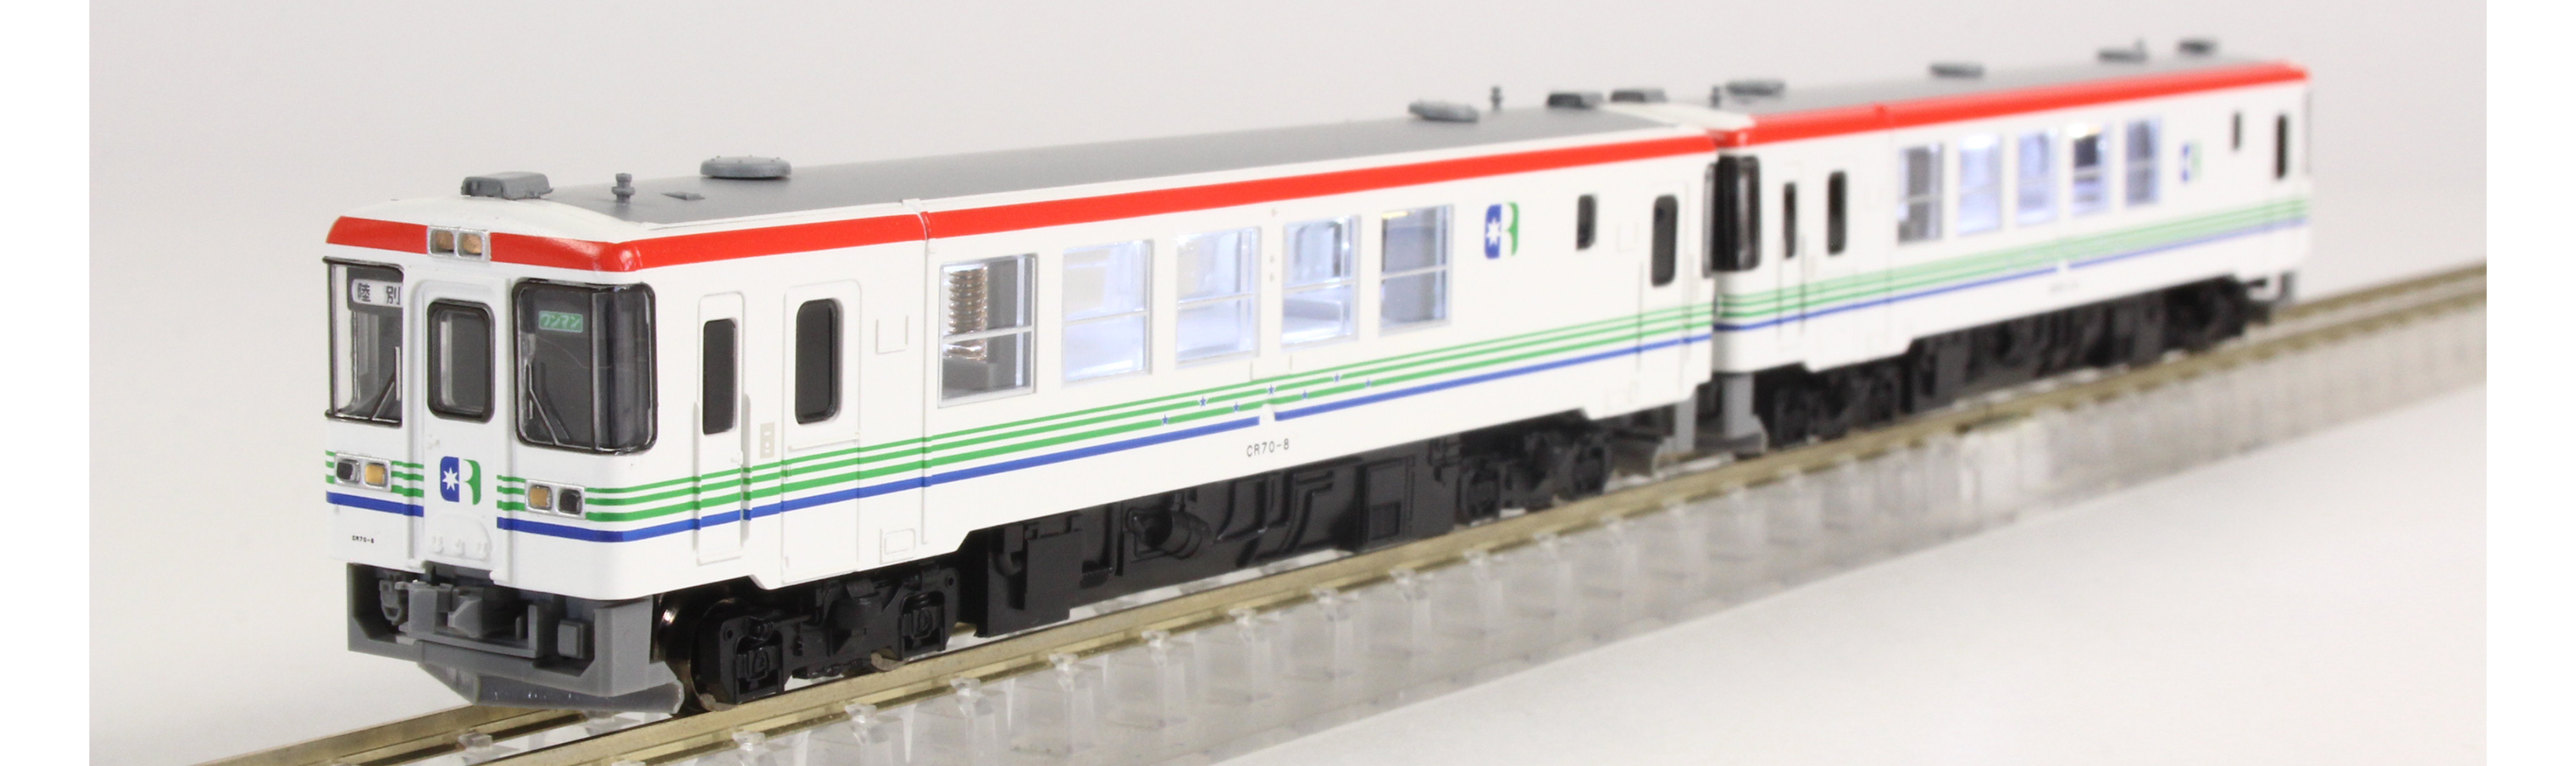 TOMIX 98093 ふるさと銀河線りくべつ鉄道 CR70-75形セット - 鉄道